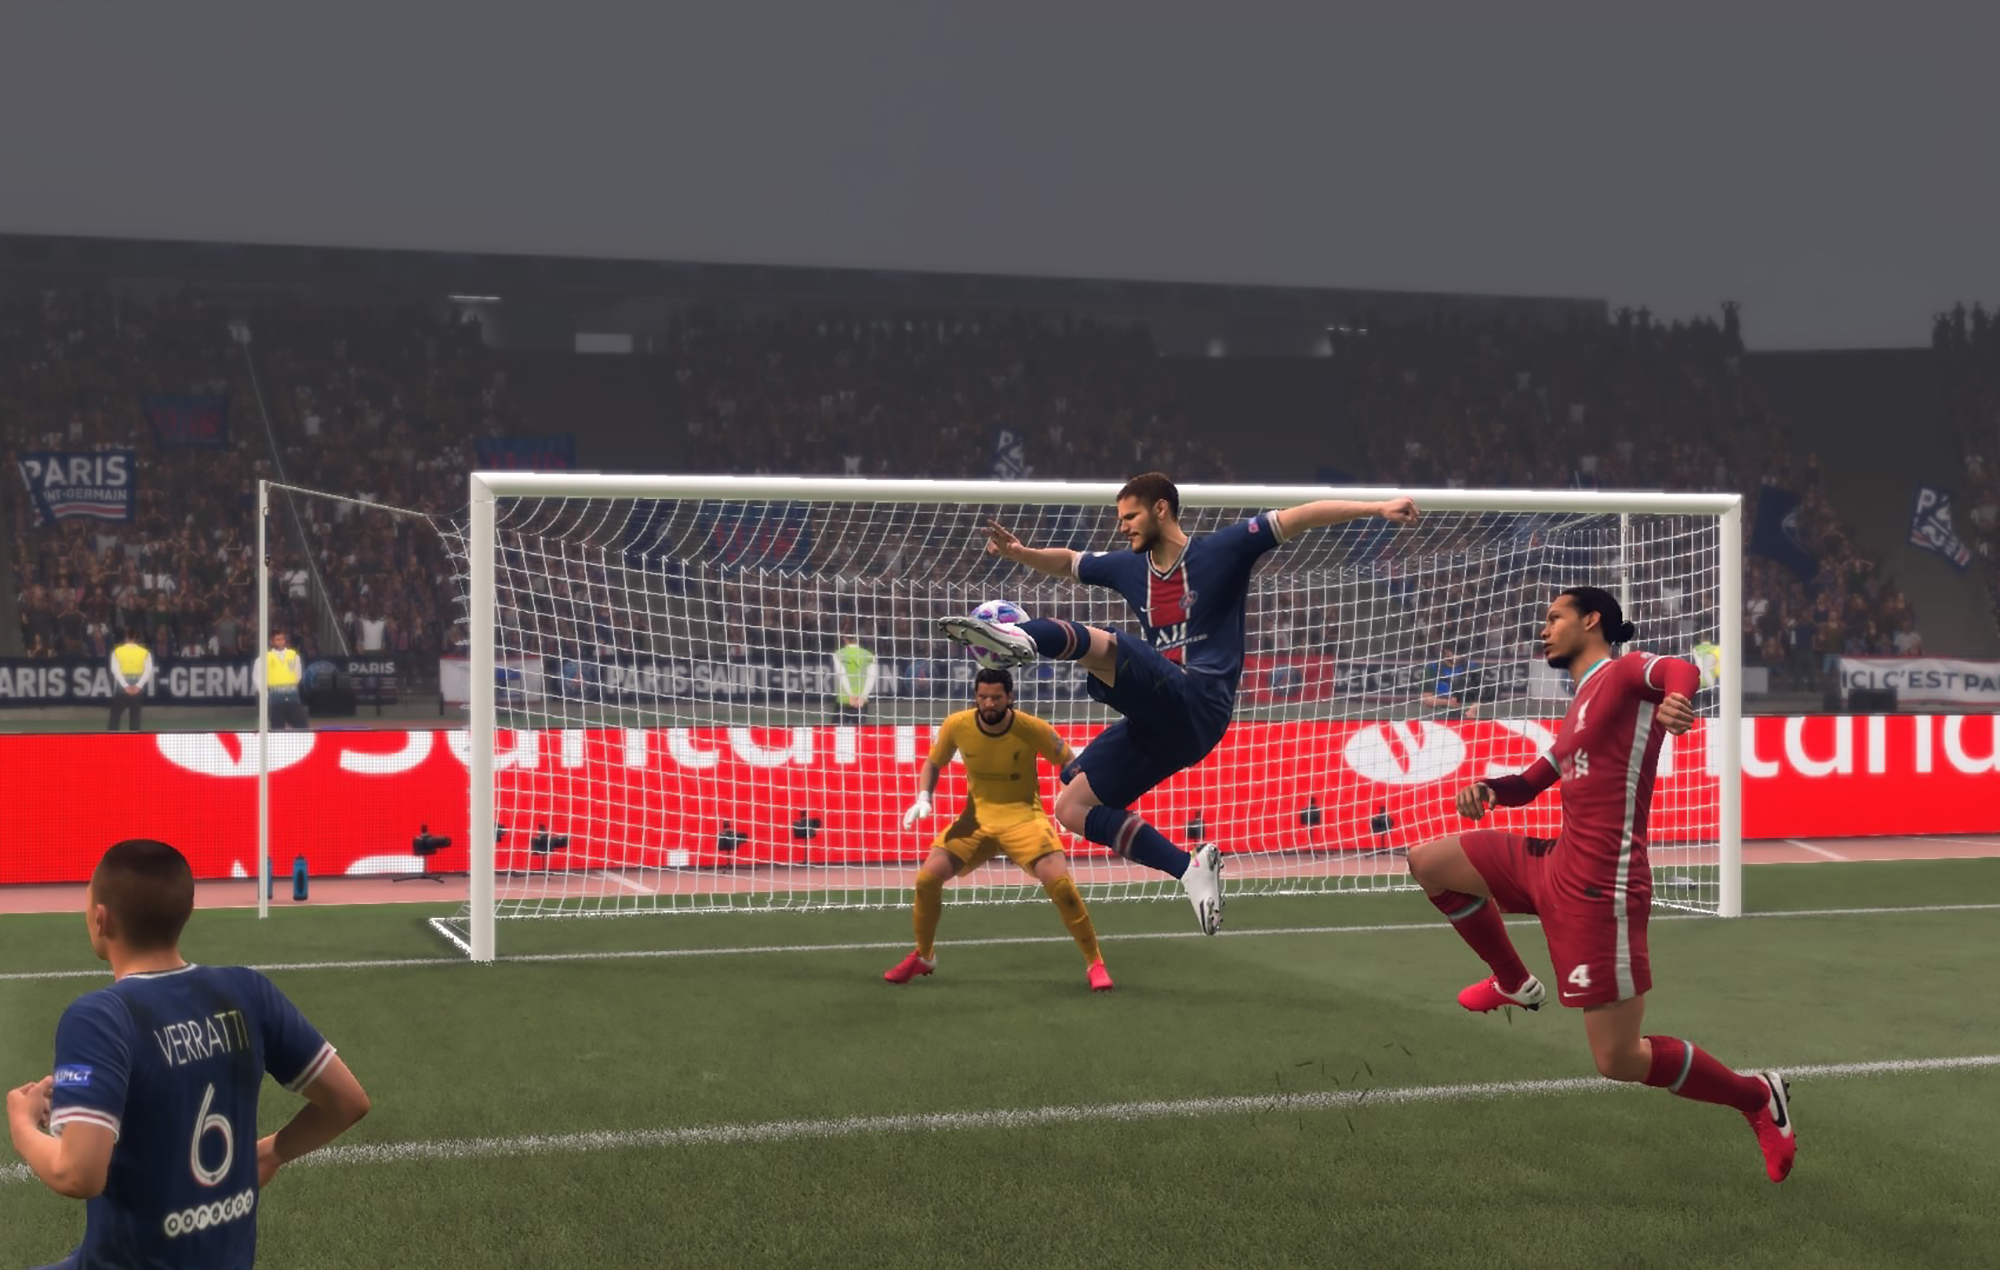 FIFA 21: vale a pena?